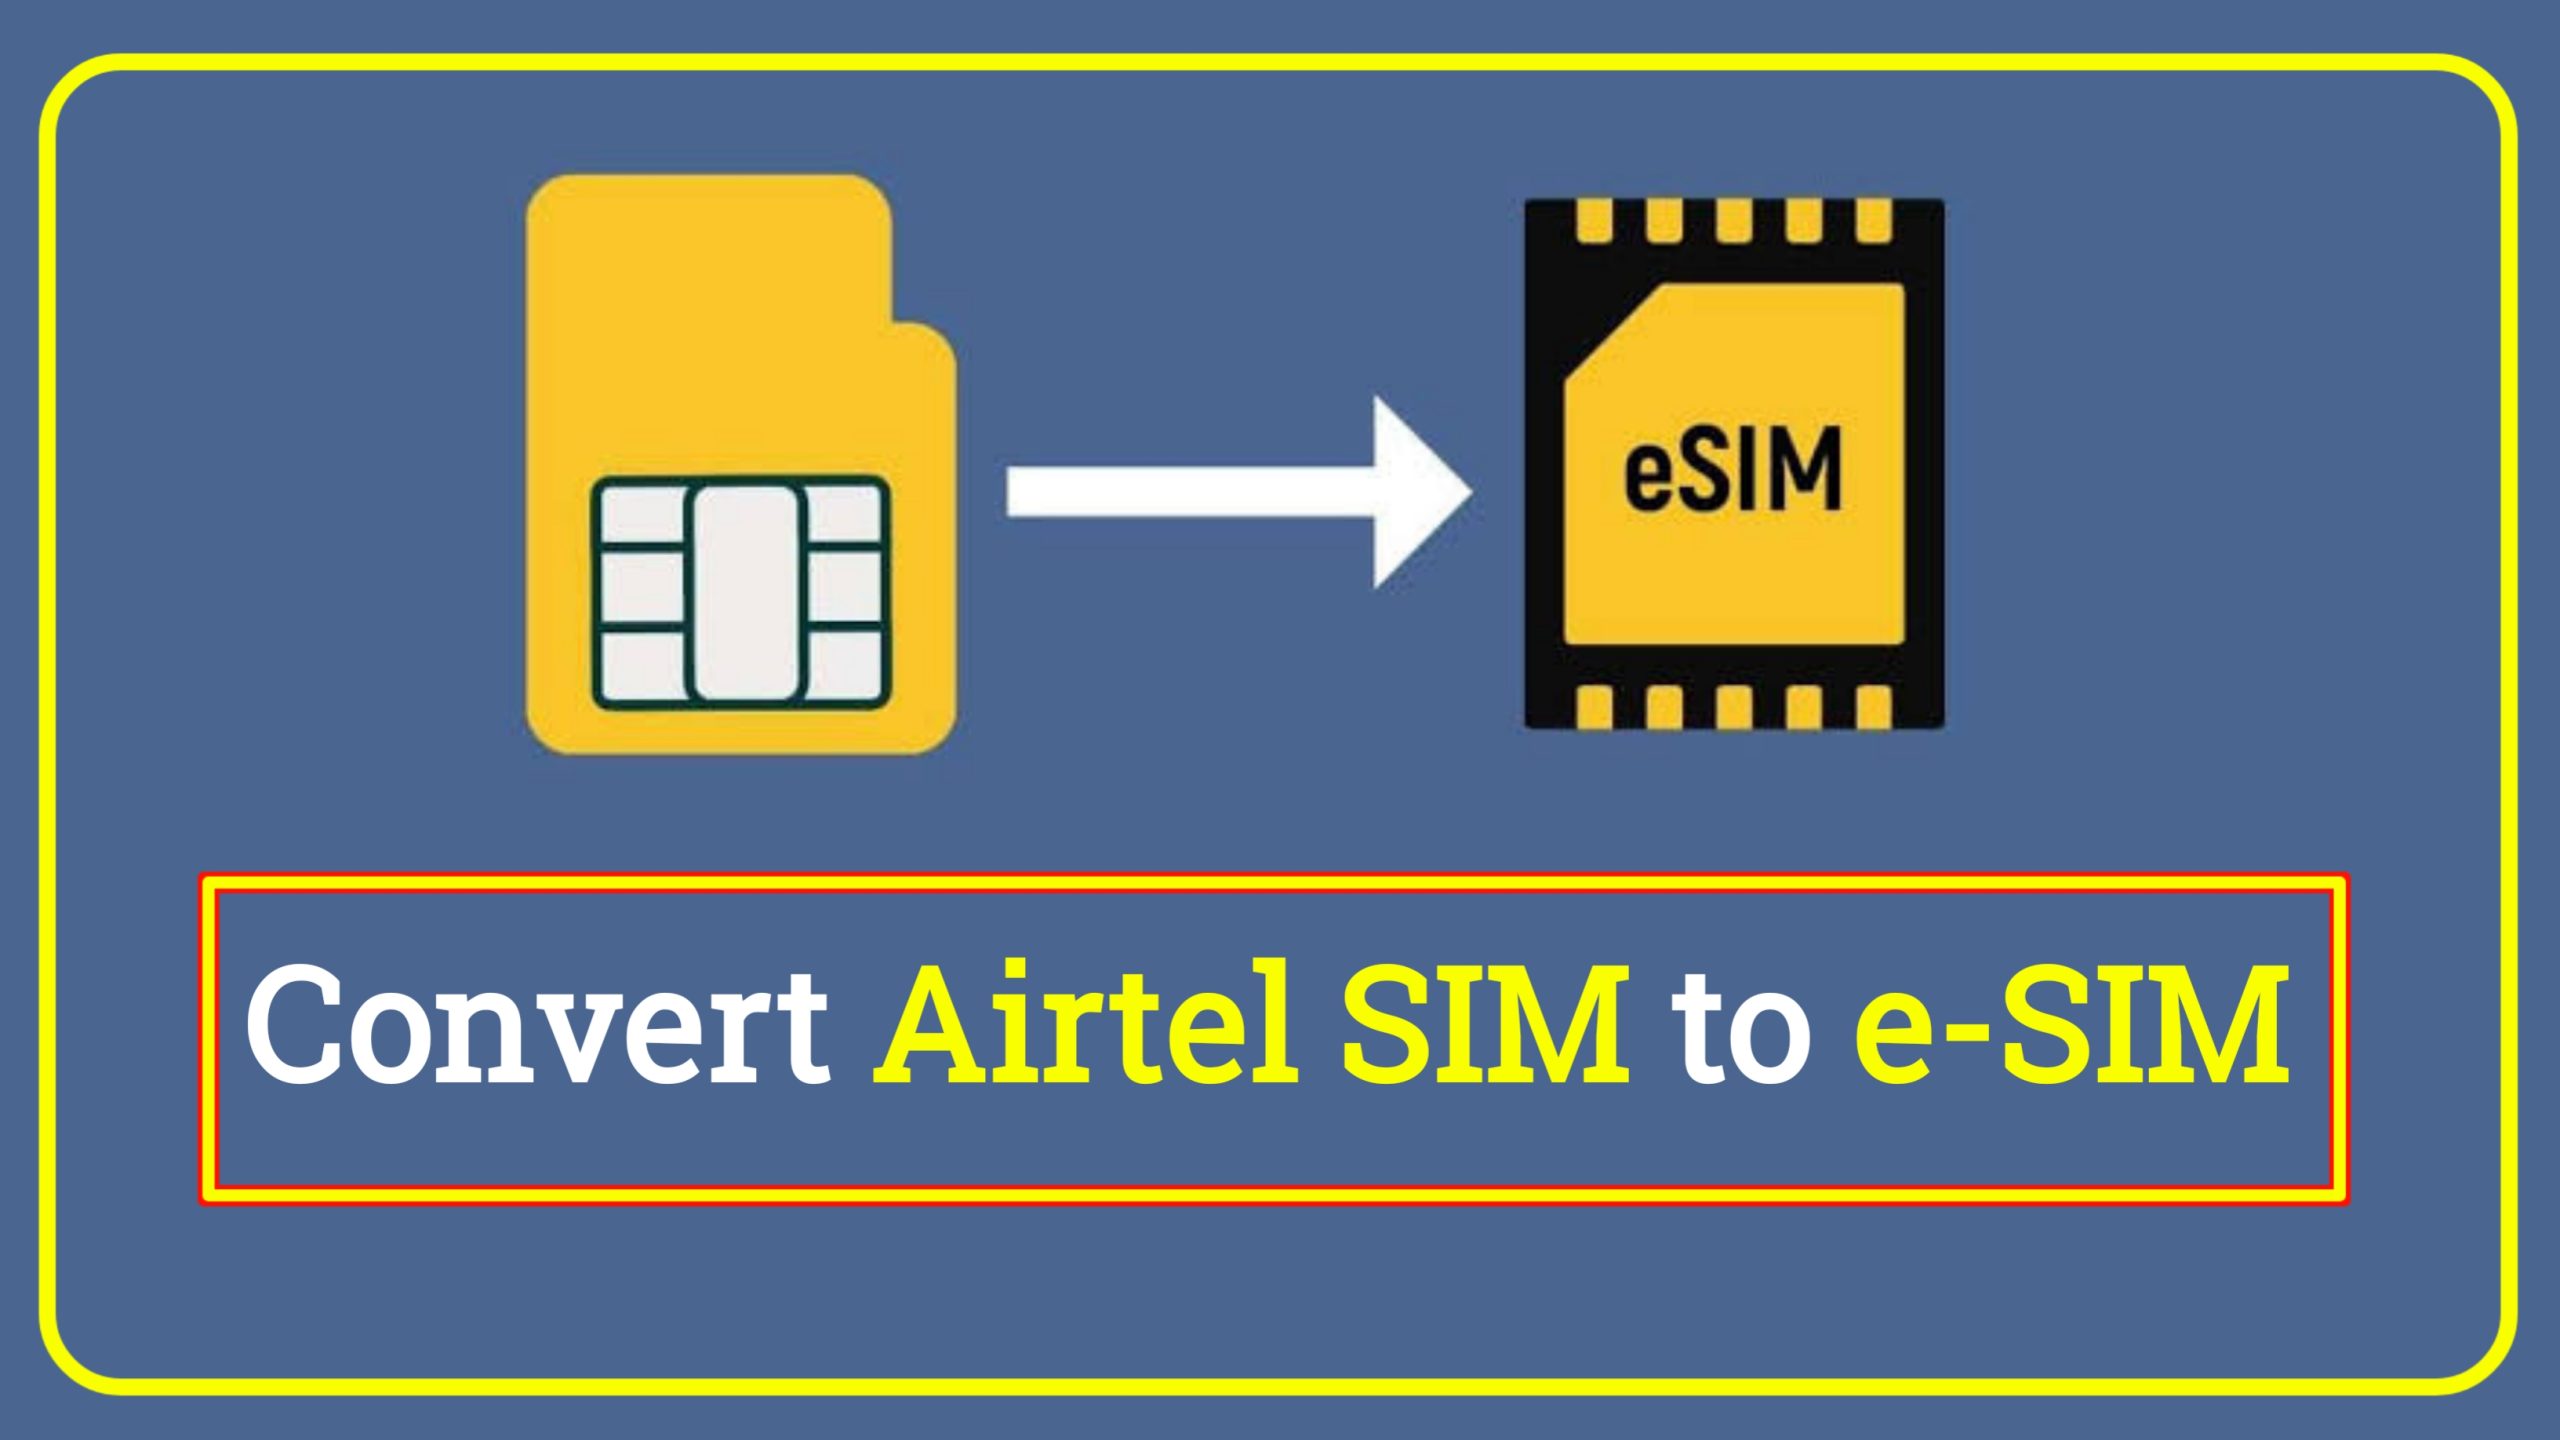 How to Convert Airtel SIM to e-SIM in Hindi | Airtel SIM ko e-SIM me Convert Kaise Kare